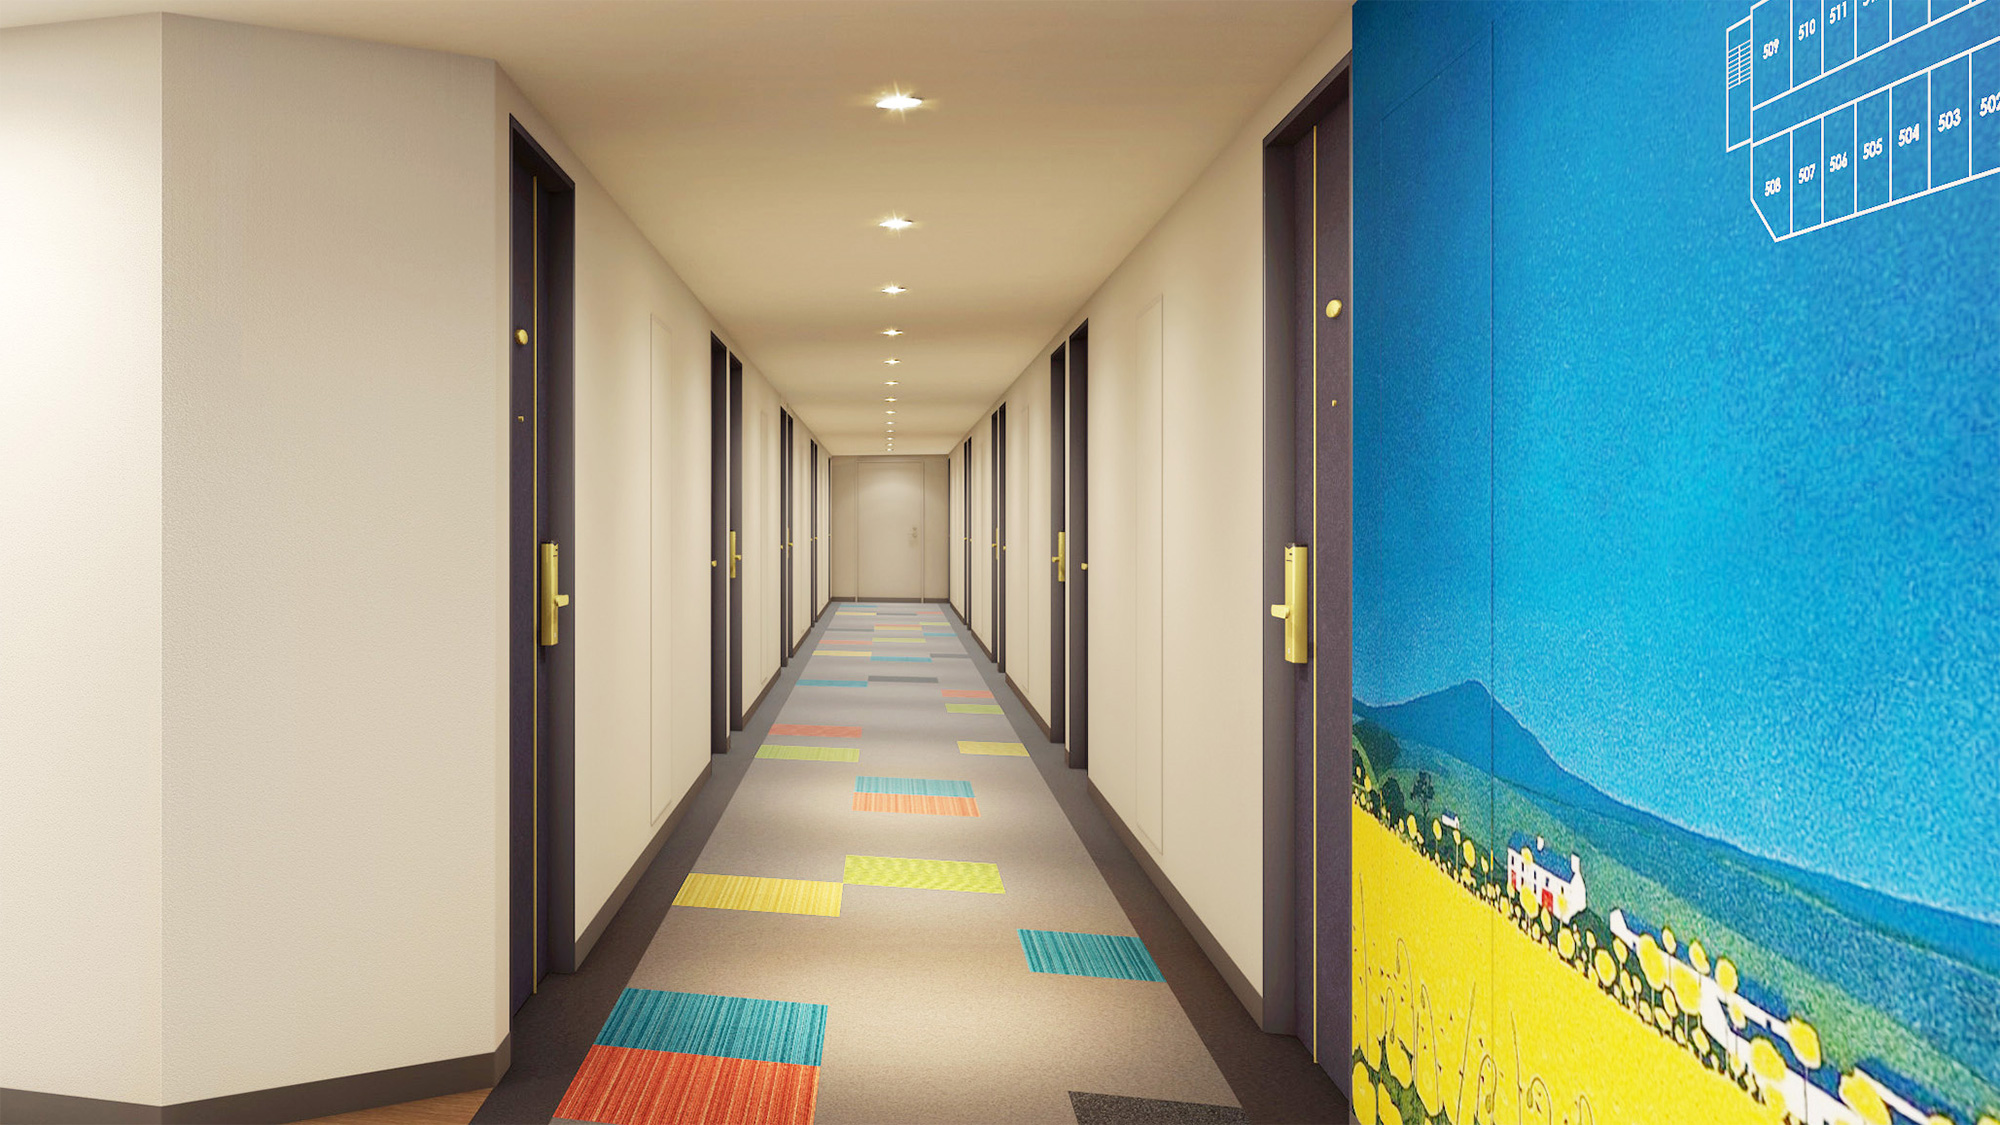 【廊下】新潟の美しい風景を感じるデザインでお客様をお迎えします